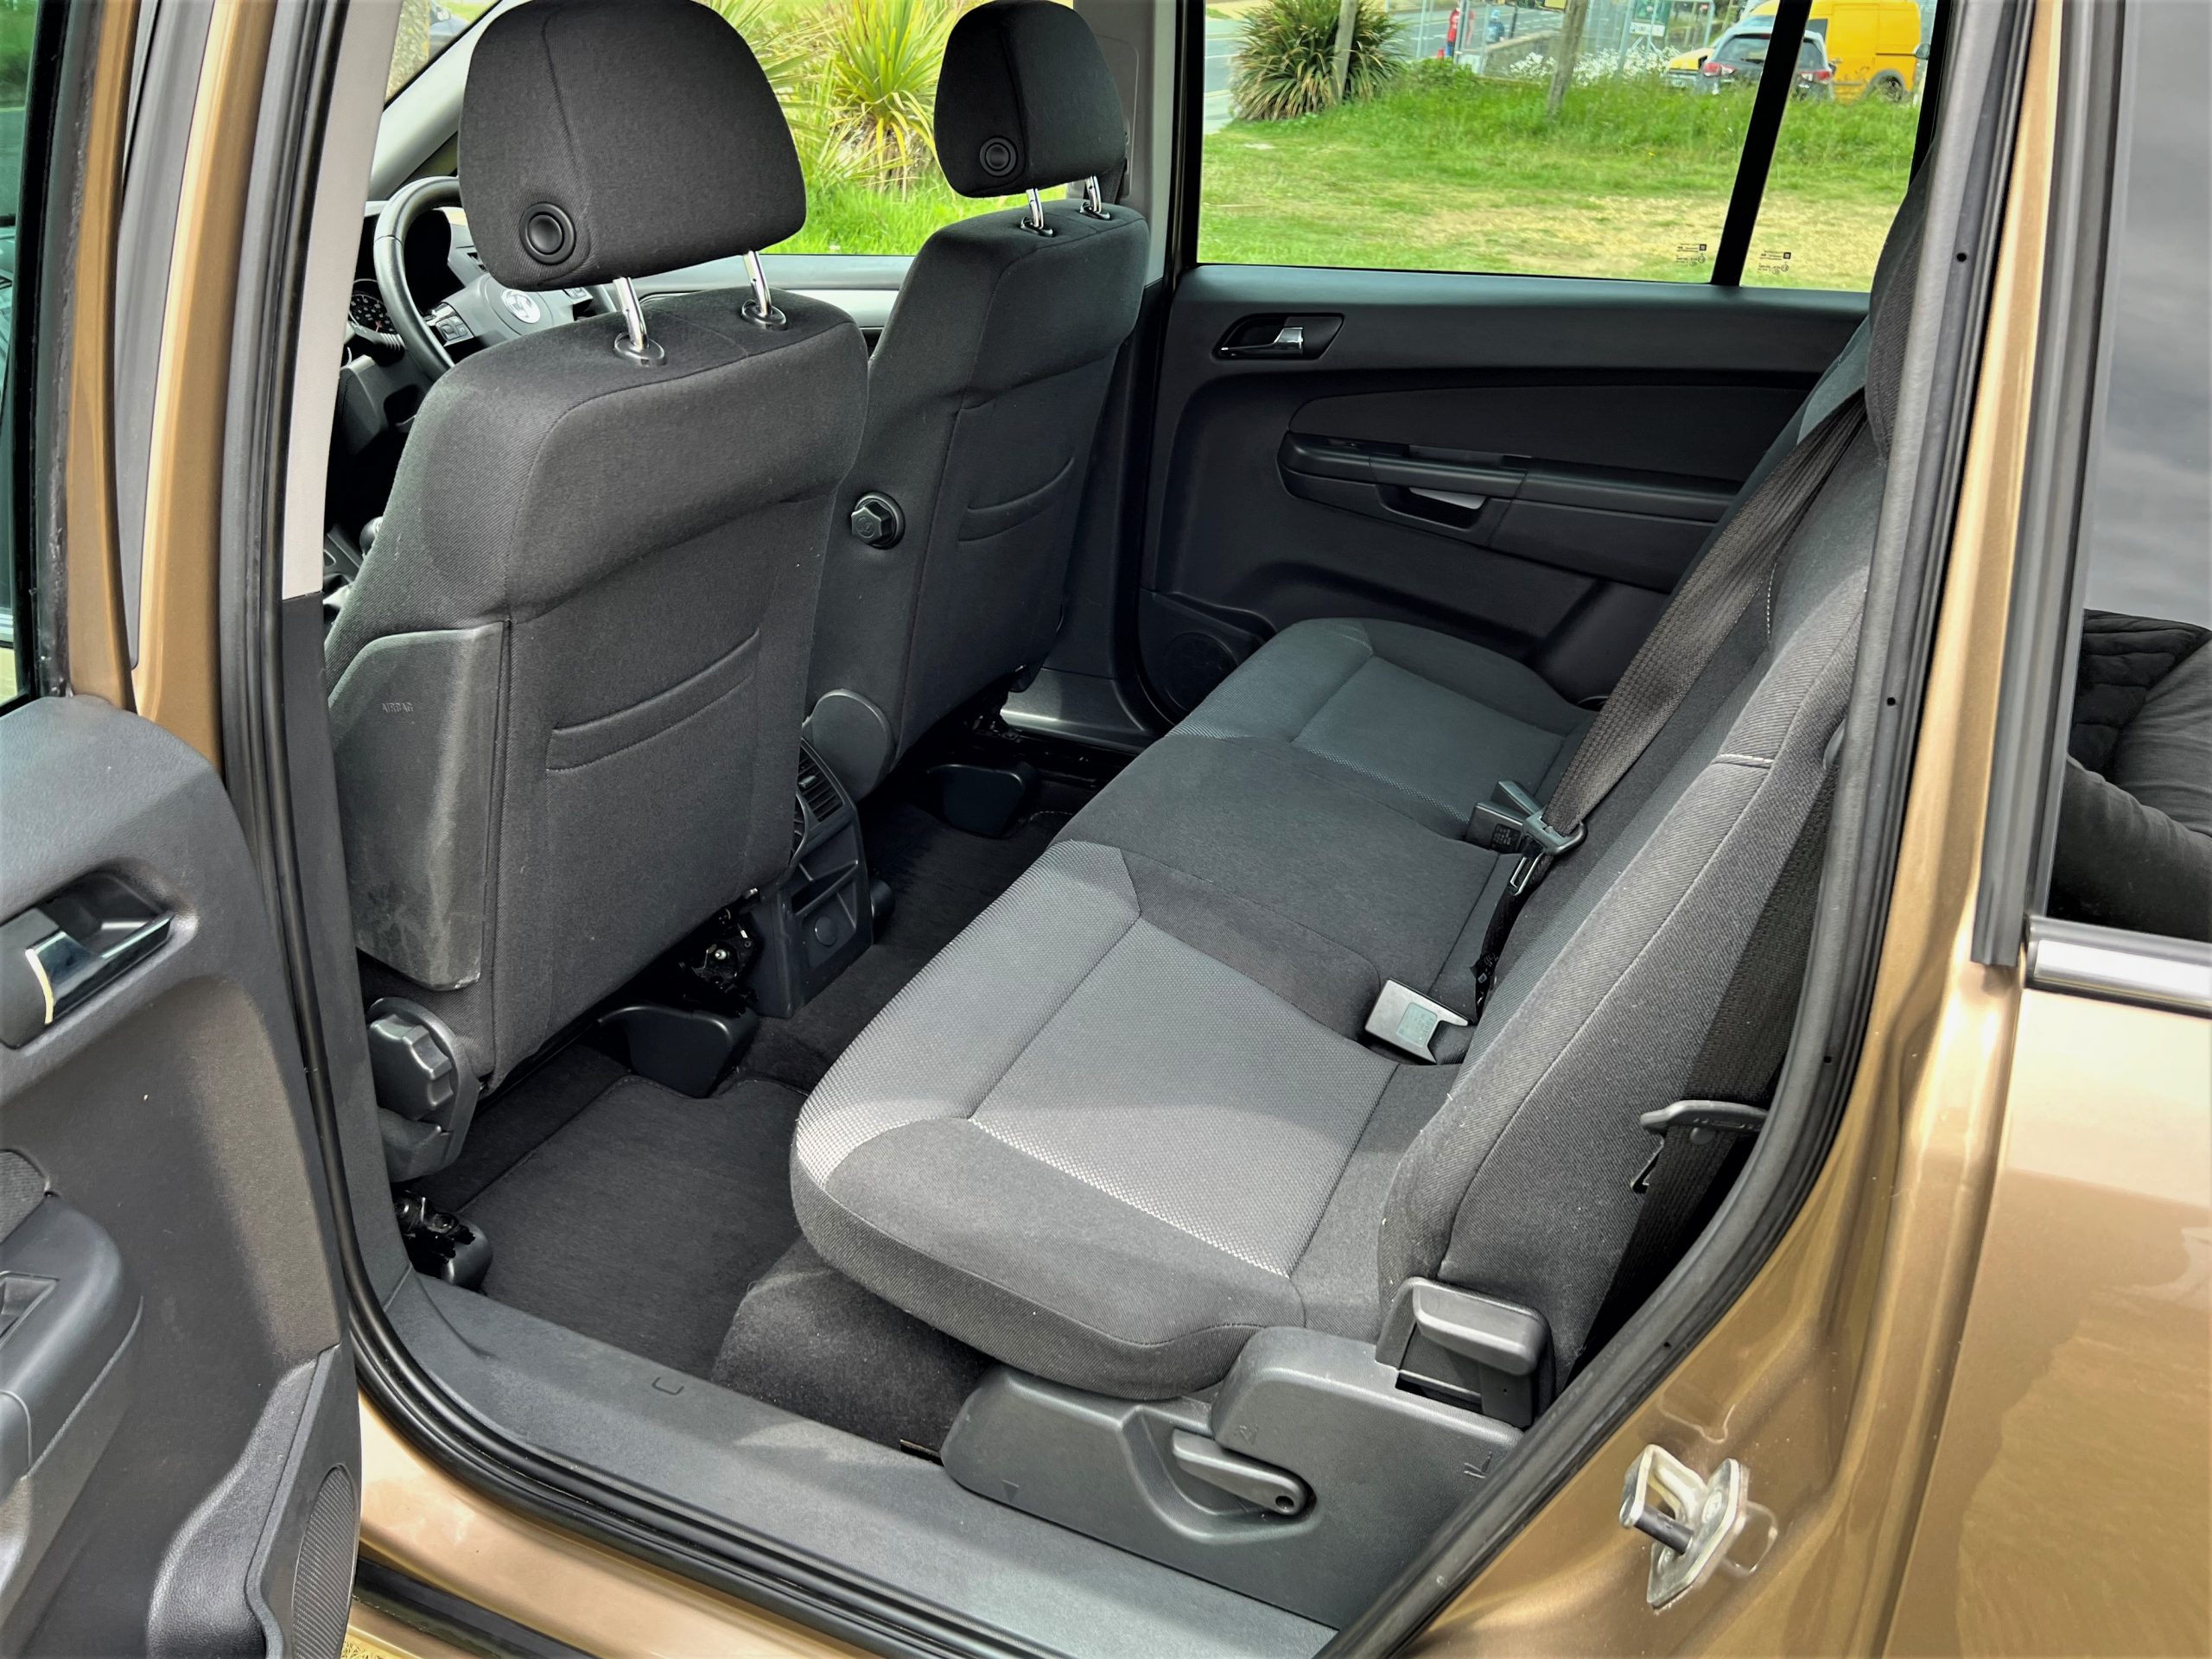 2013 (62) Vauxhall Zafira 1.8 Design Nav 7 Seater